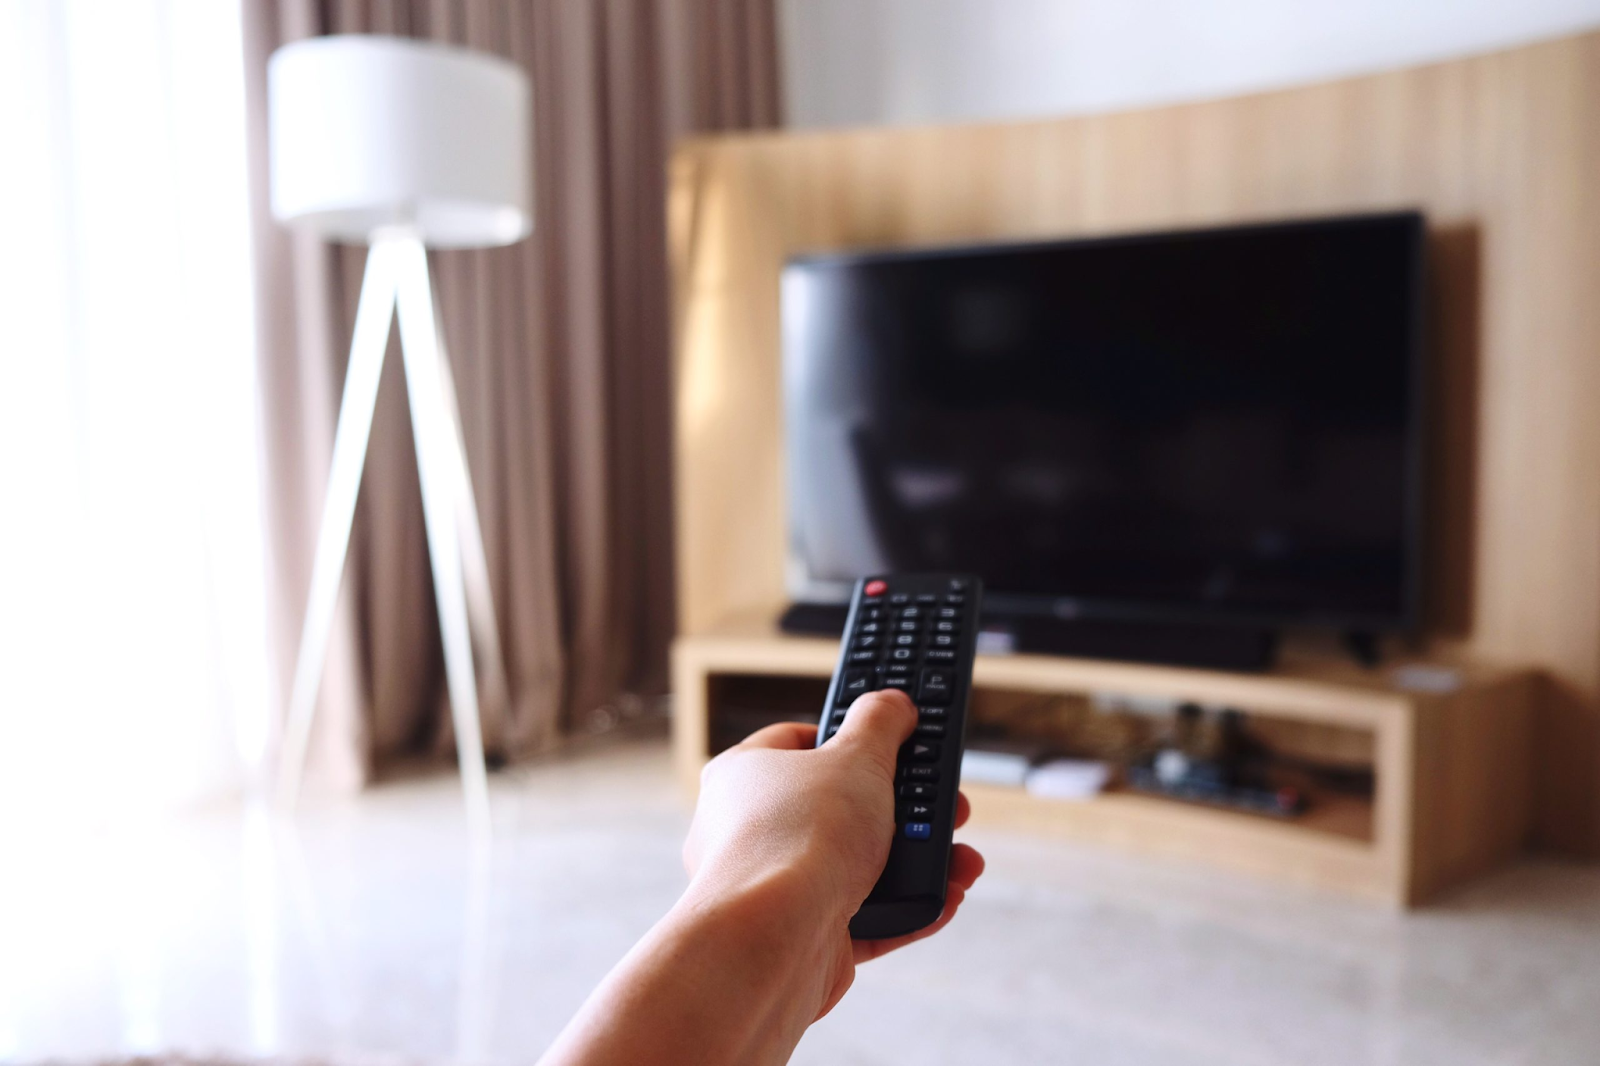 Thói quen tắt tivi bằng remote gây ảnh hưởng xấu đến nguồn điện tivi